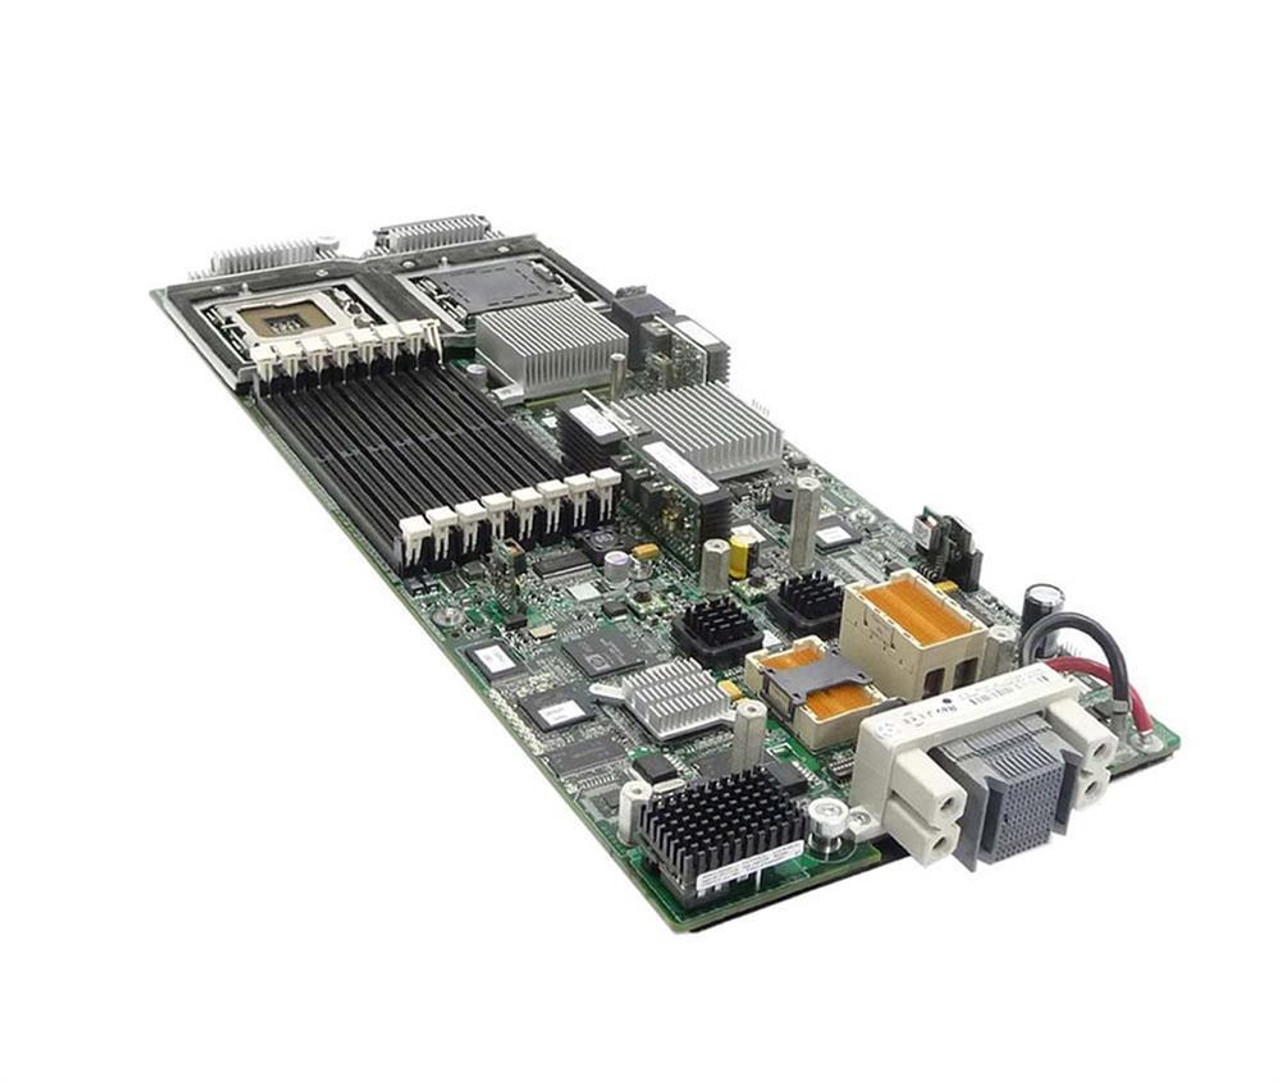 436645-001 HP System Board (MotherBoard) for ProLiant BL460C Server (Refurbished)